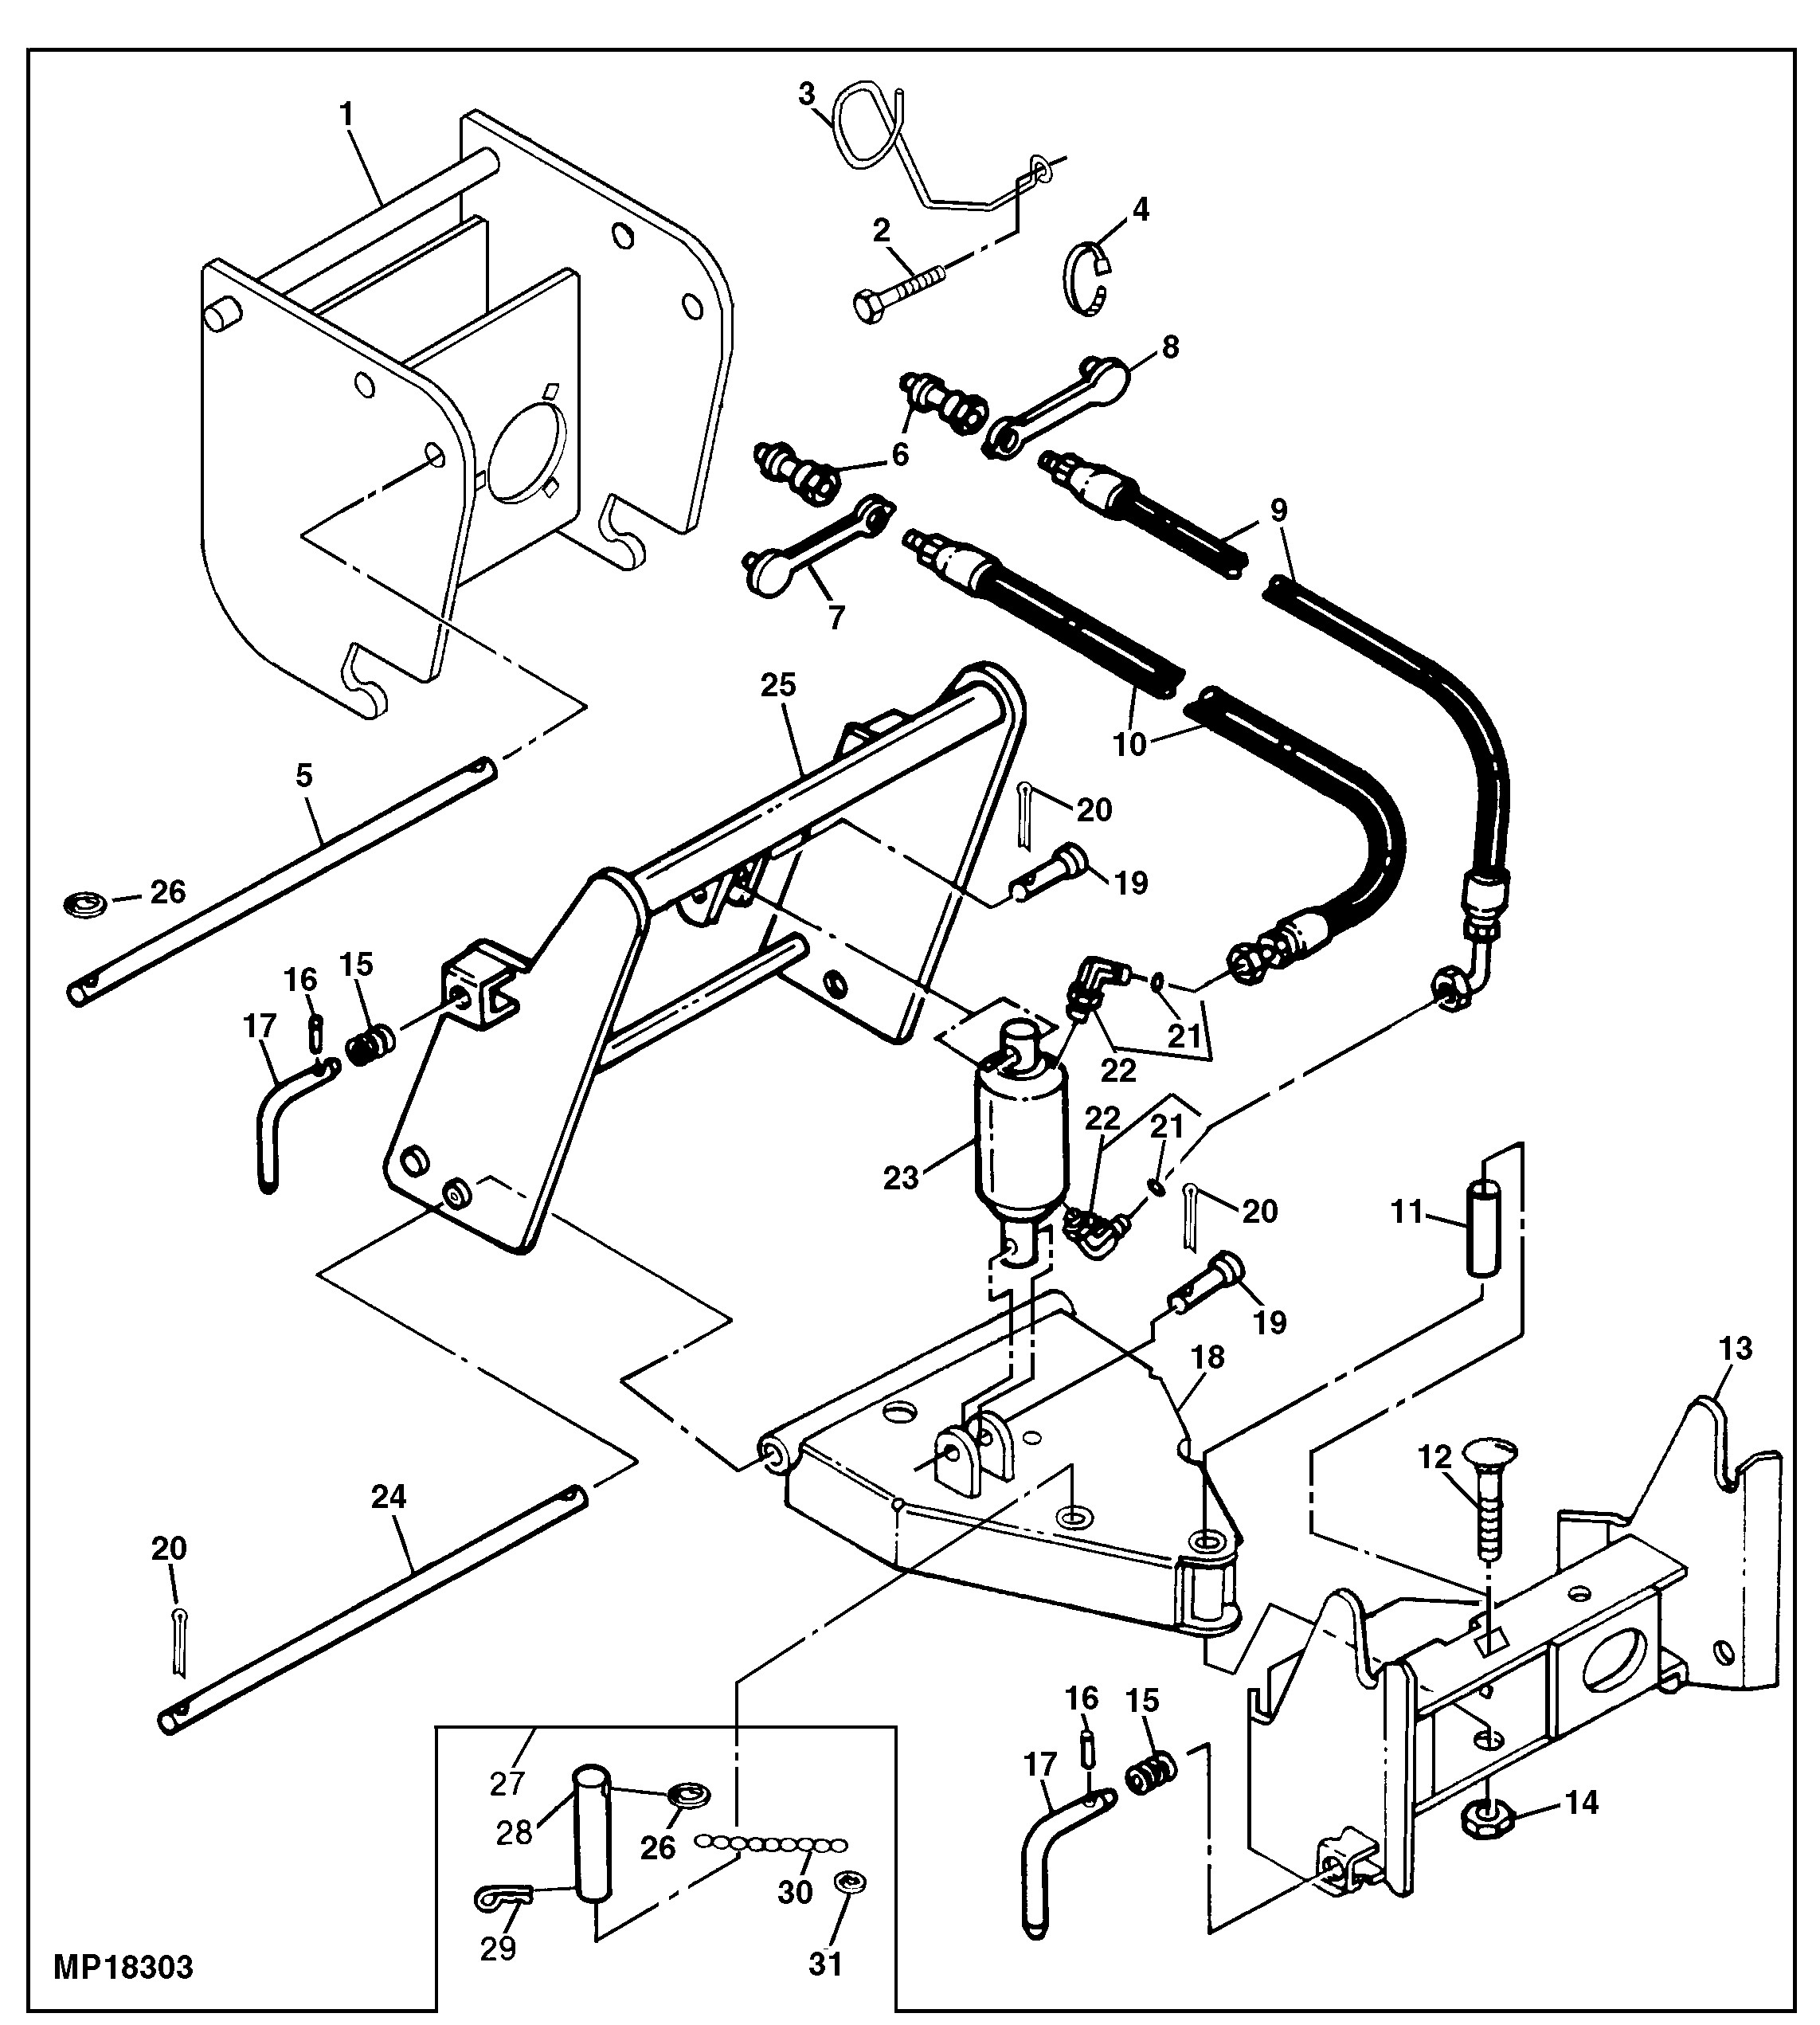 Ditch Witch Parts Diagram Peugeot 206 Parts Manual Ebook Of Ditch Witch Parts Diagram